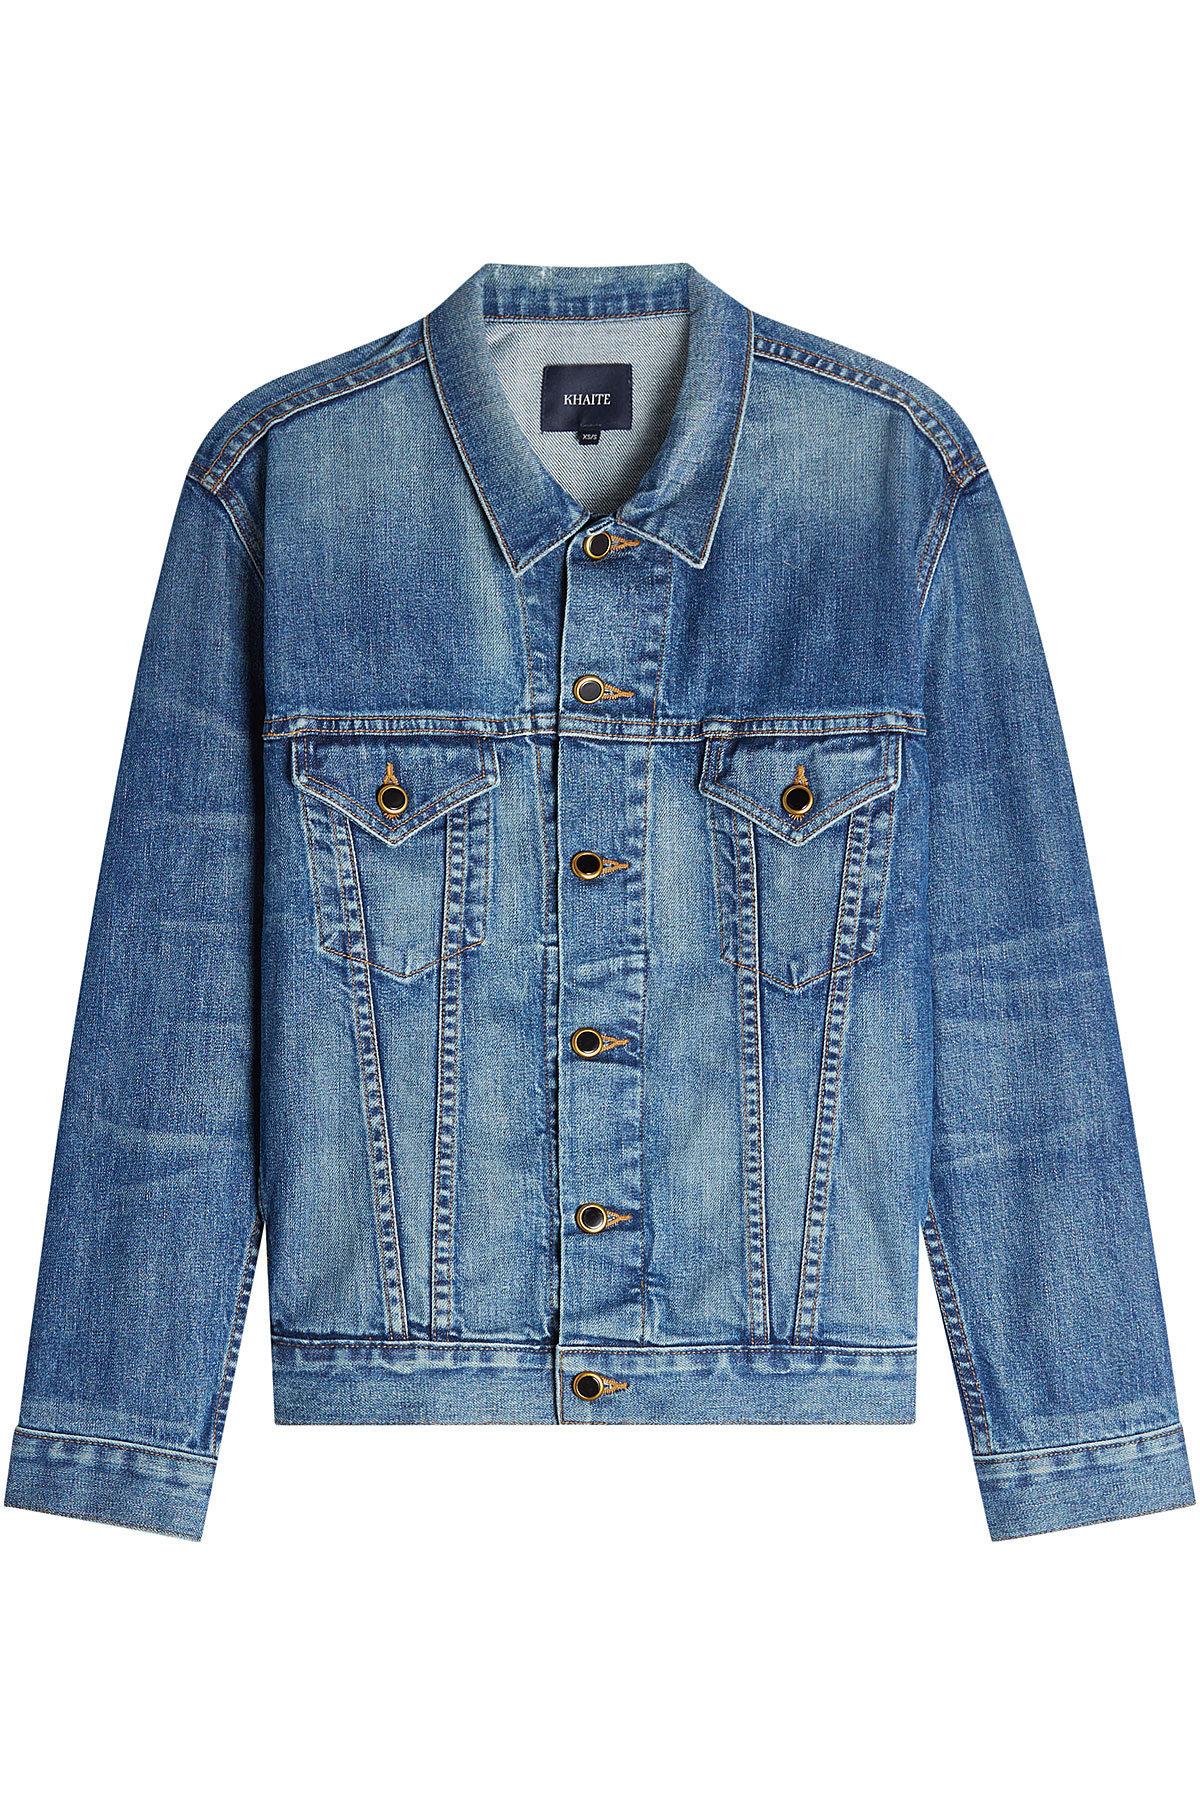 Khaite Cate Oversized Denim Jacket In Blue | ModeSens